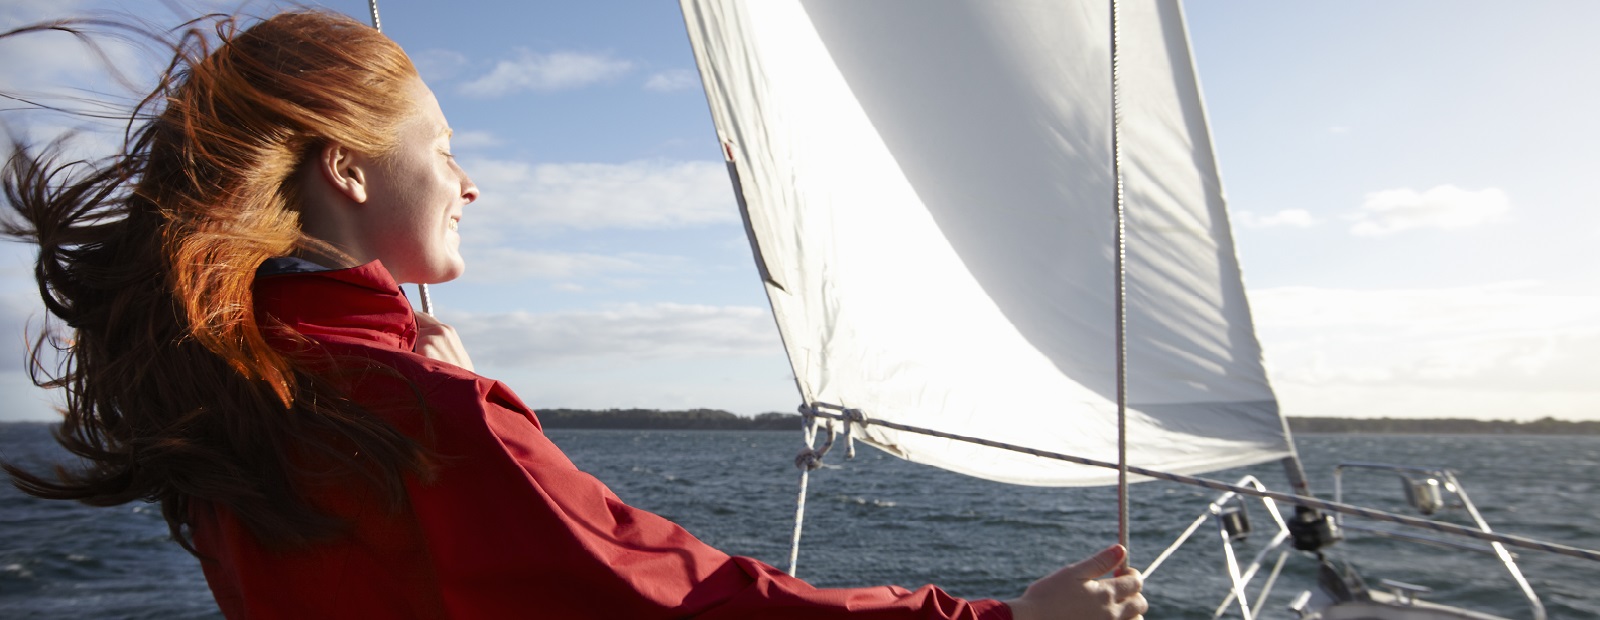 sailing holiday travel insurance